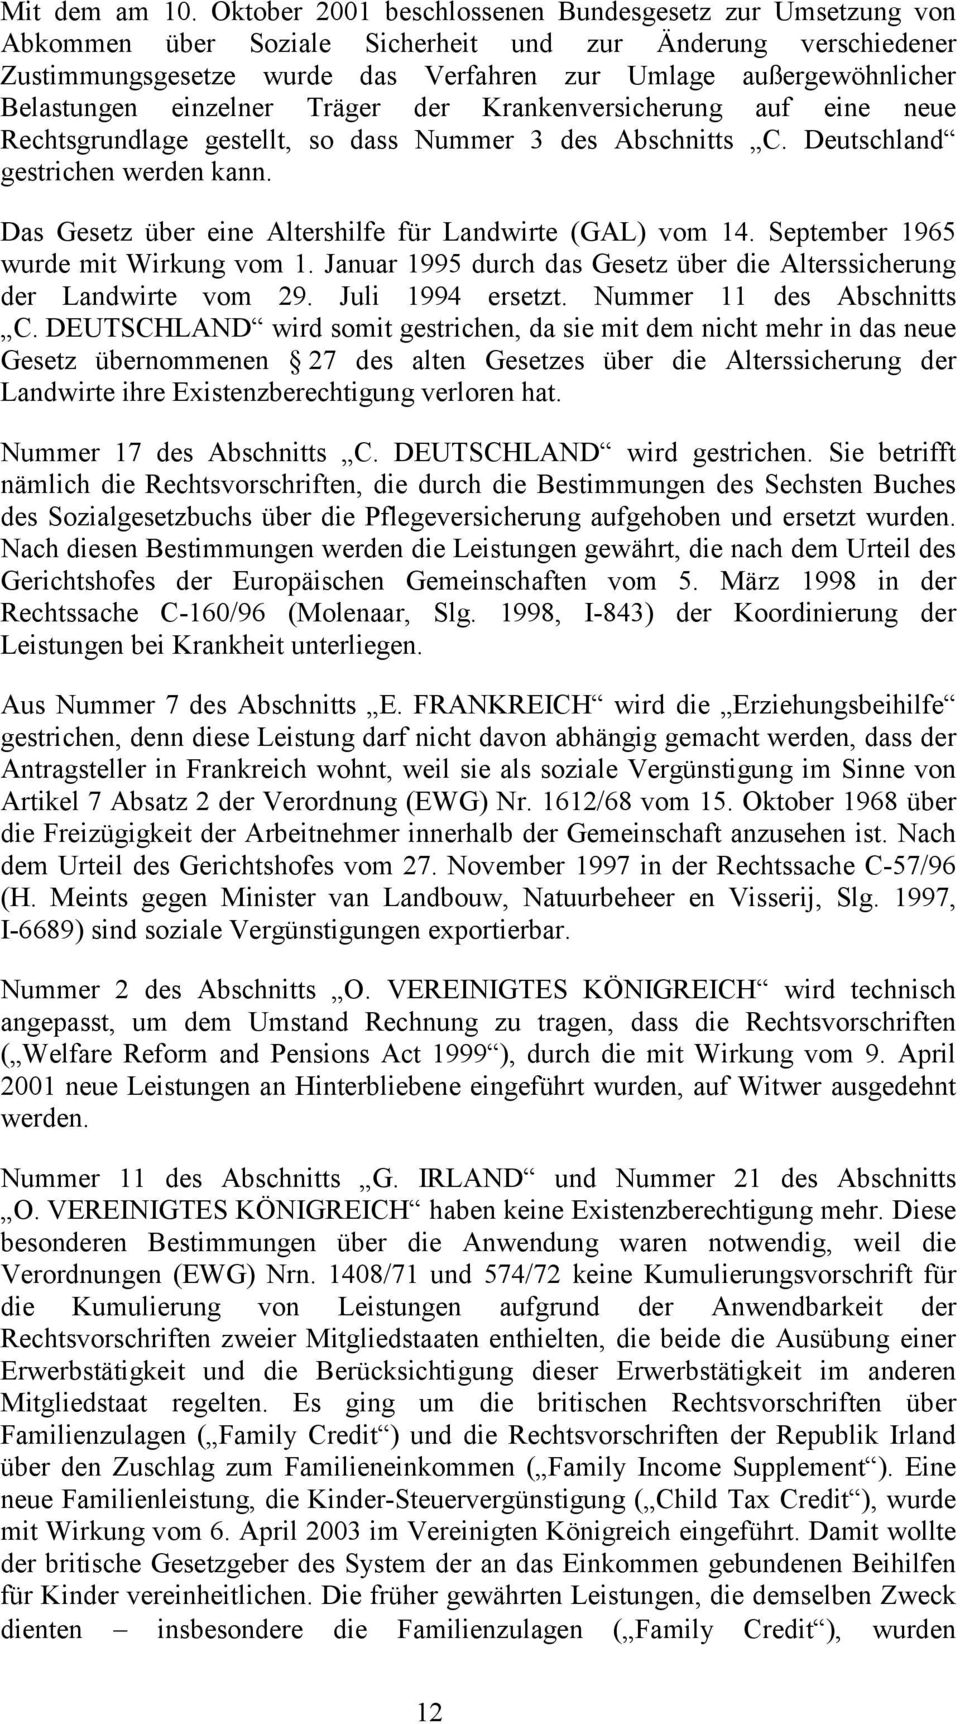 Belastungen einzelner Träger der Krankenversicherung auf eine neue Rechtsgrundlage gestellt, so dass Nummer 3 des Abschnitts C. Deutschland gestrichen werden kann.